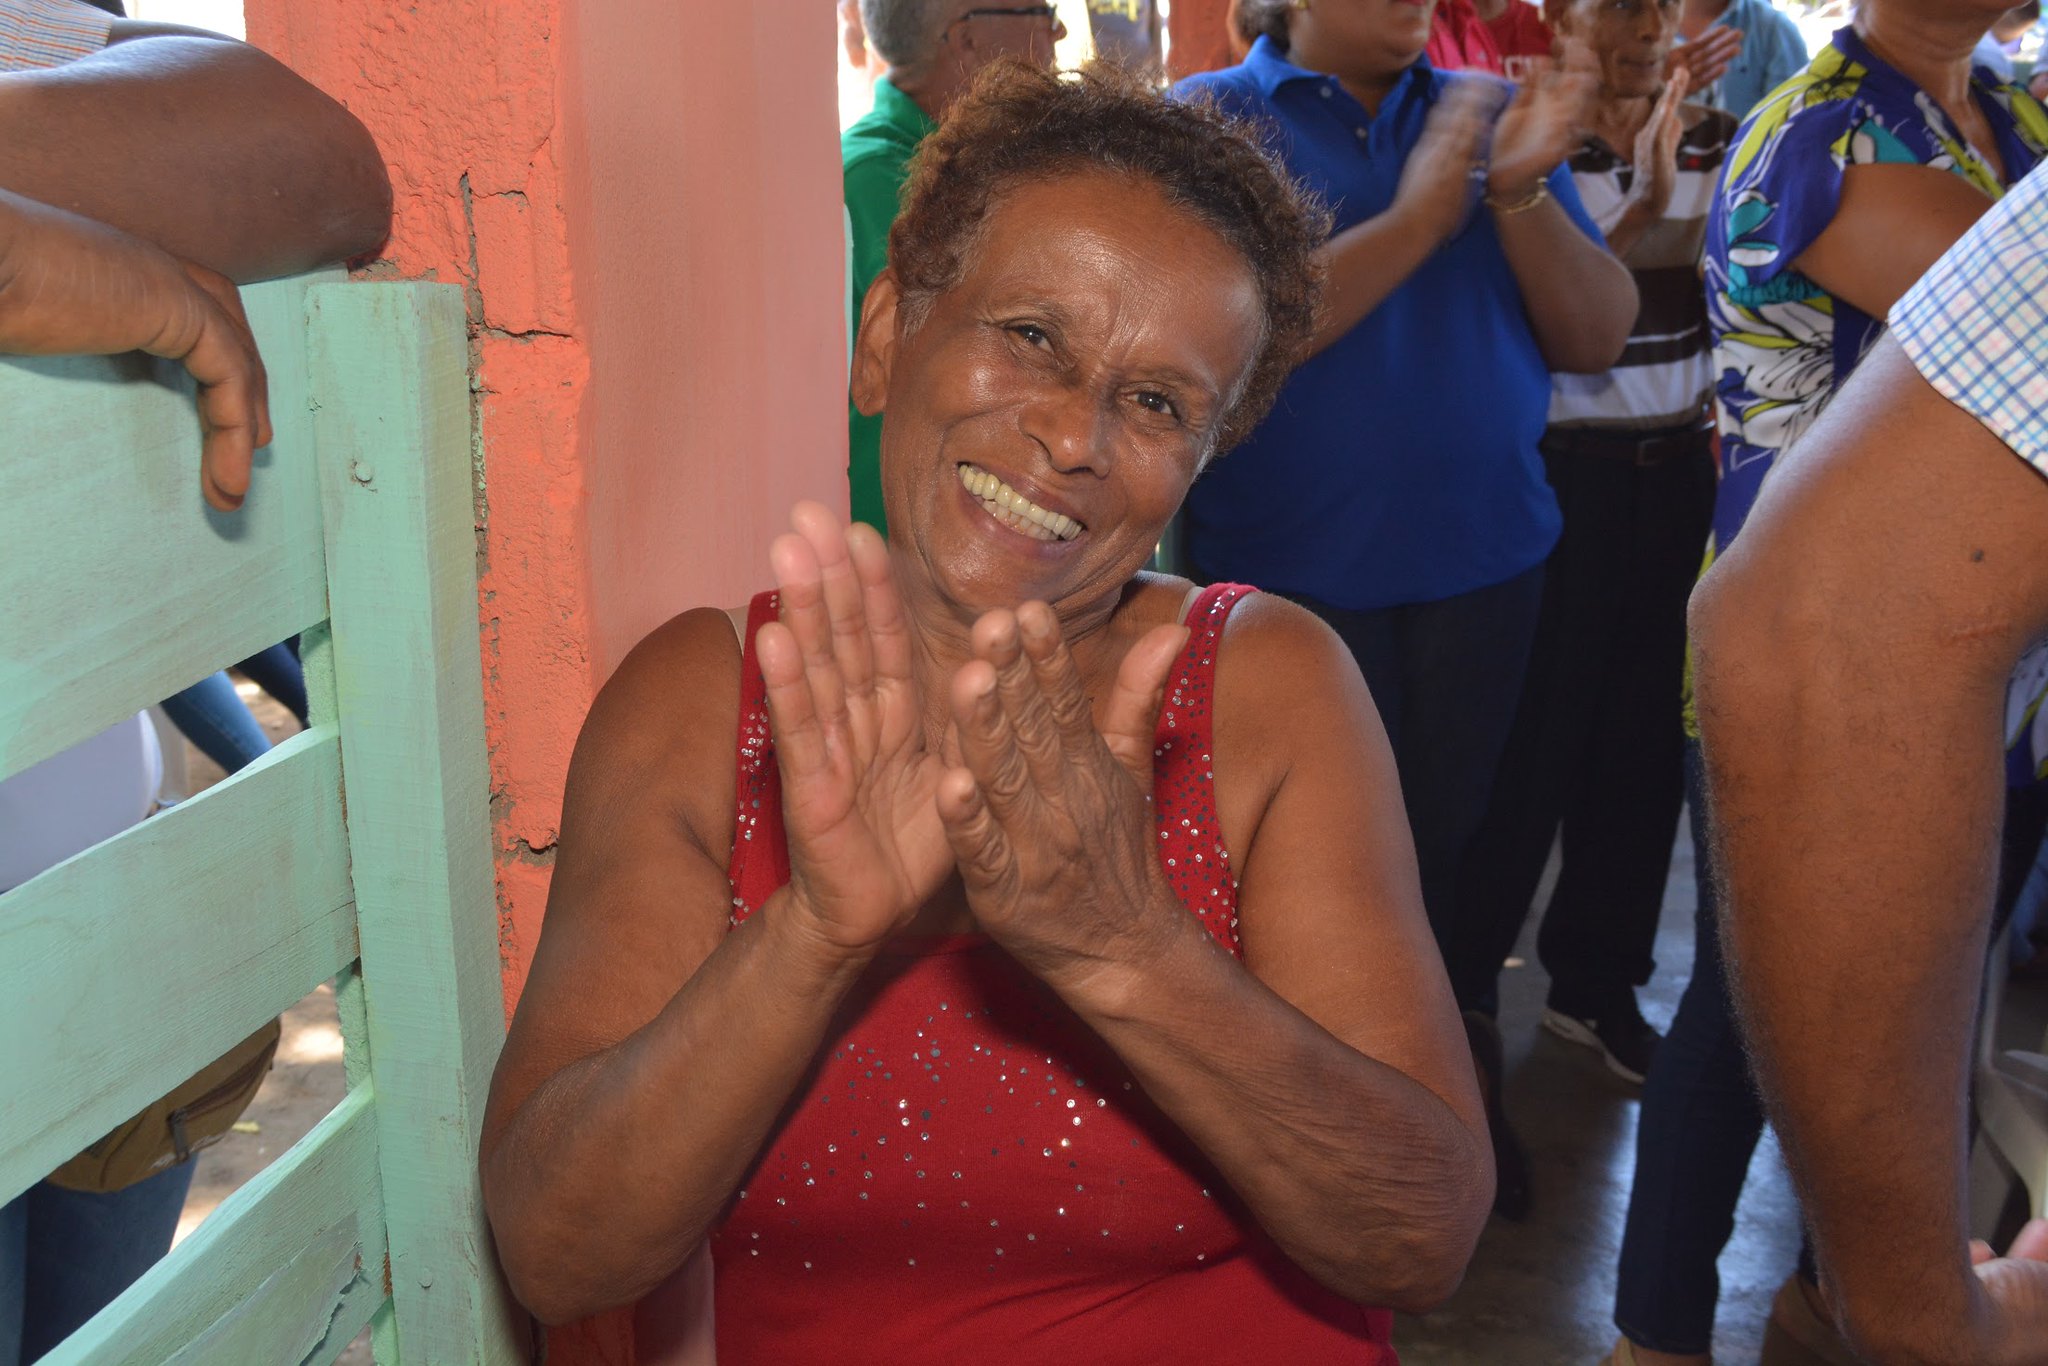 REPÚBLICA DOMINICANA: Ahora sí que echaremos para adelante: parceleros de Montecristi se reúnen con comisión de seguimiento a compromisos Visita Sorpresa 260